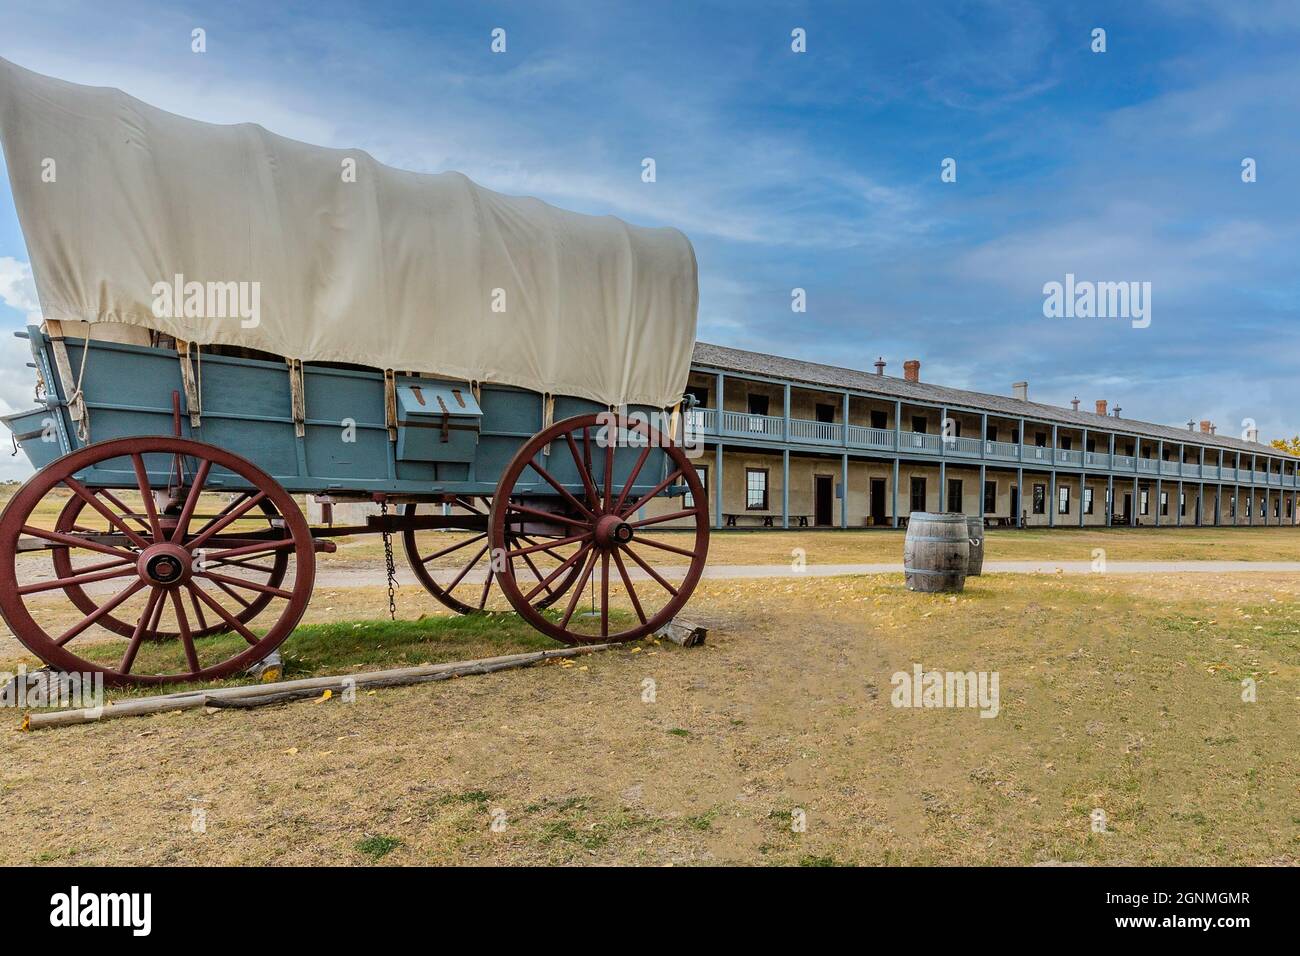 Caserma di cavalleria (1874) il più grande edificio di Fort Laramie è stato costruito per aggiungere alloggi durante le guerre indiane. I soldati dormivano in due ampie baie Foto Stock